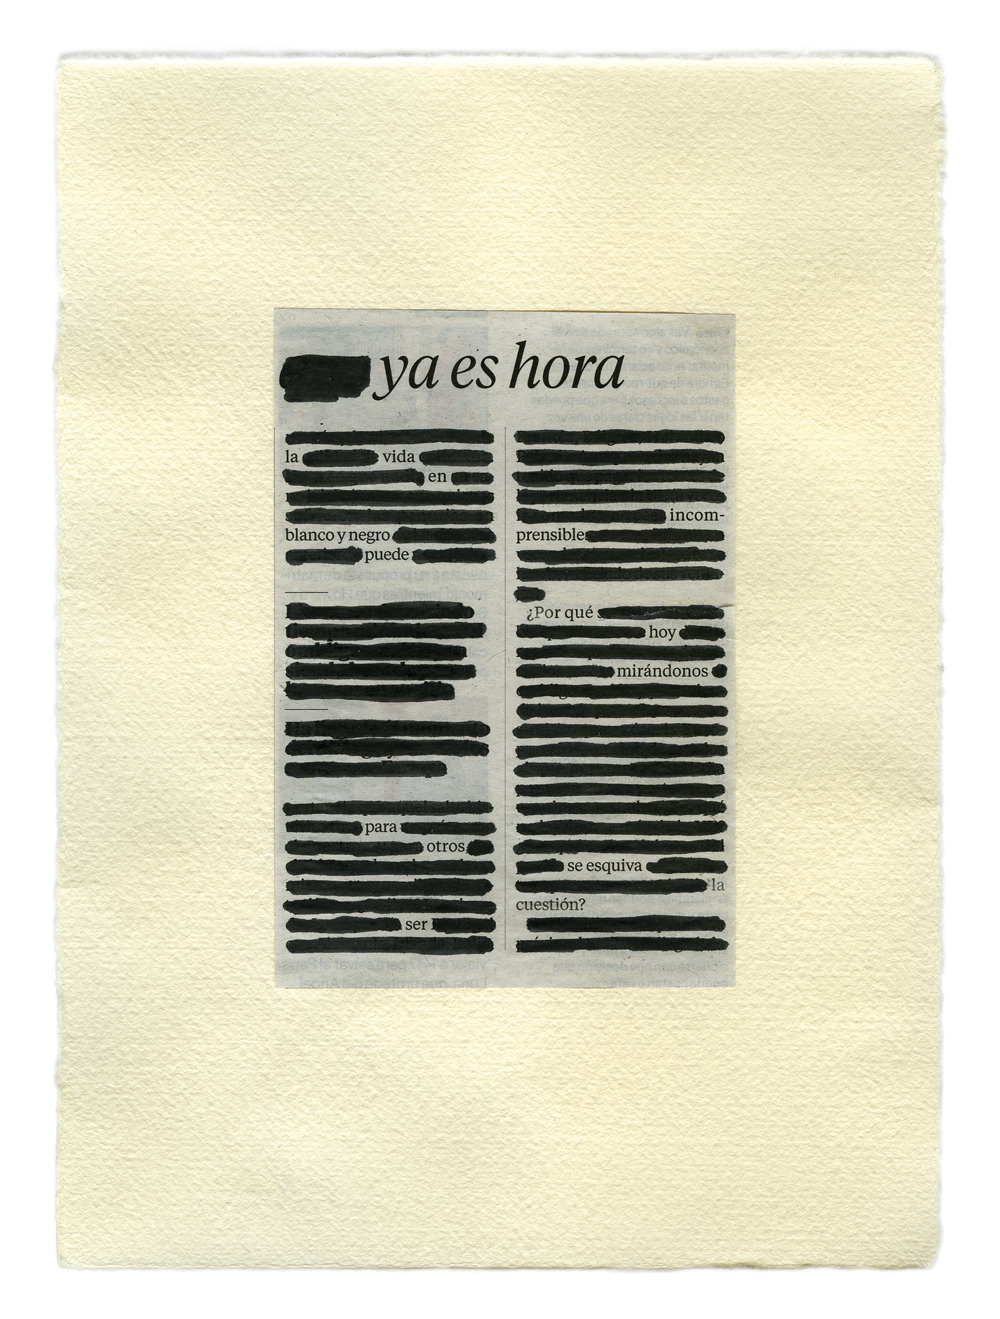 Ya es hora (2018) - Lina Ávila - Collage Republic